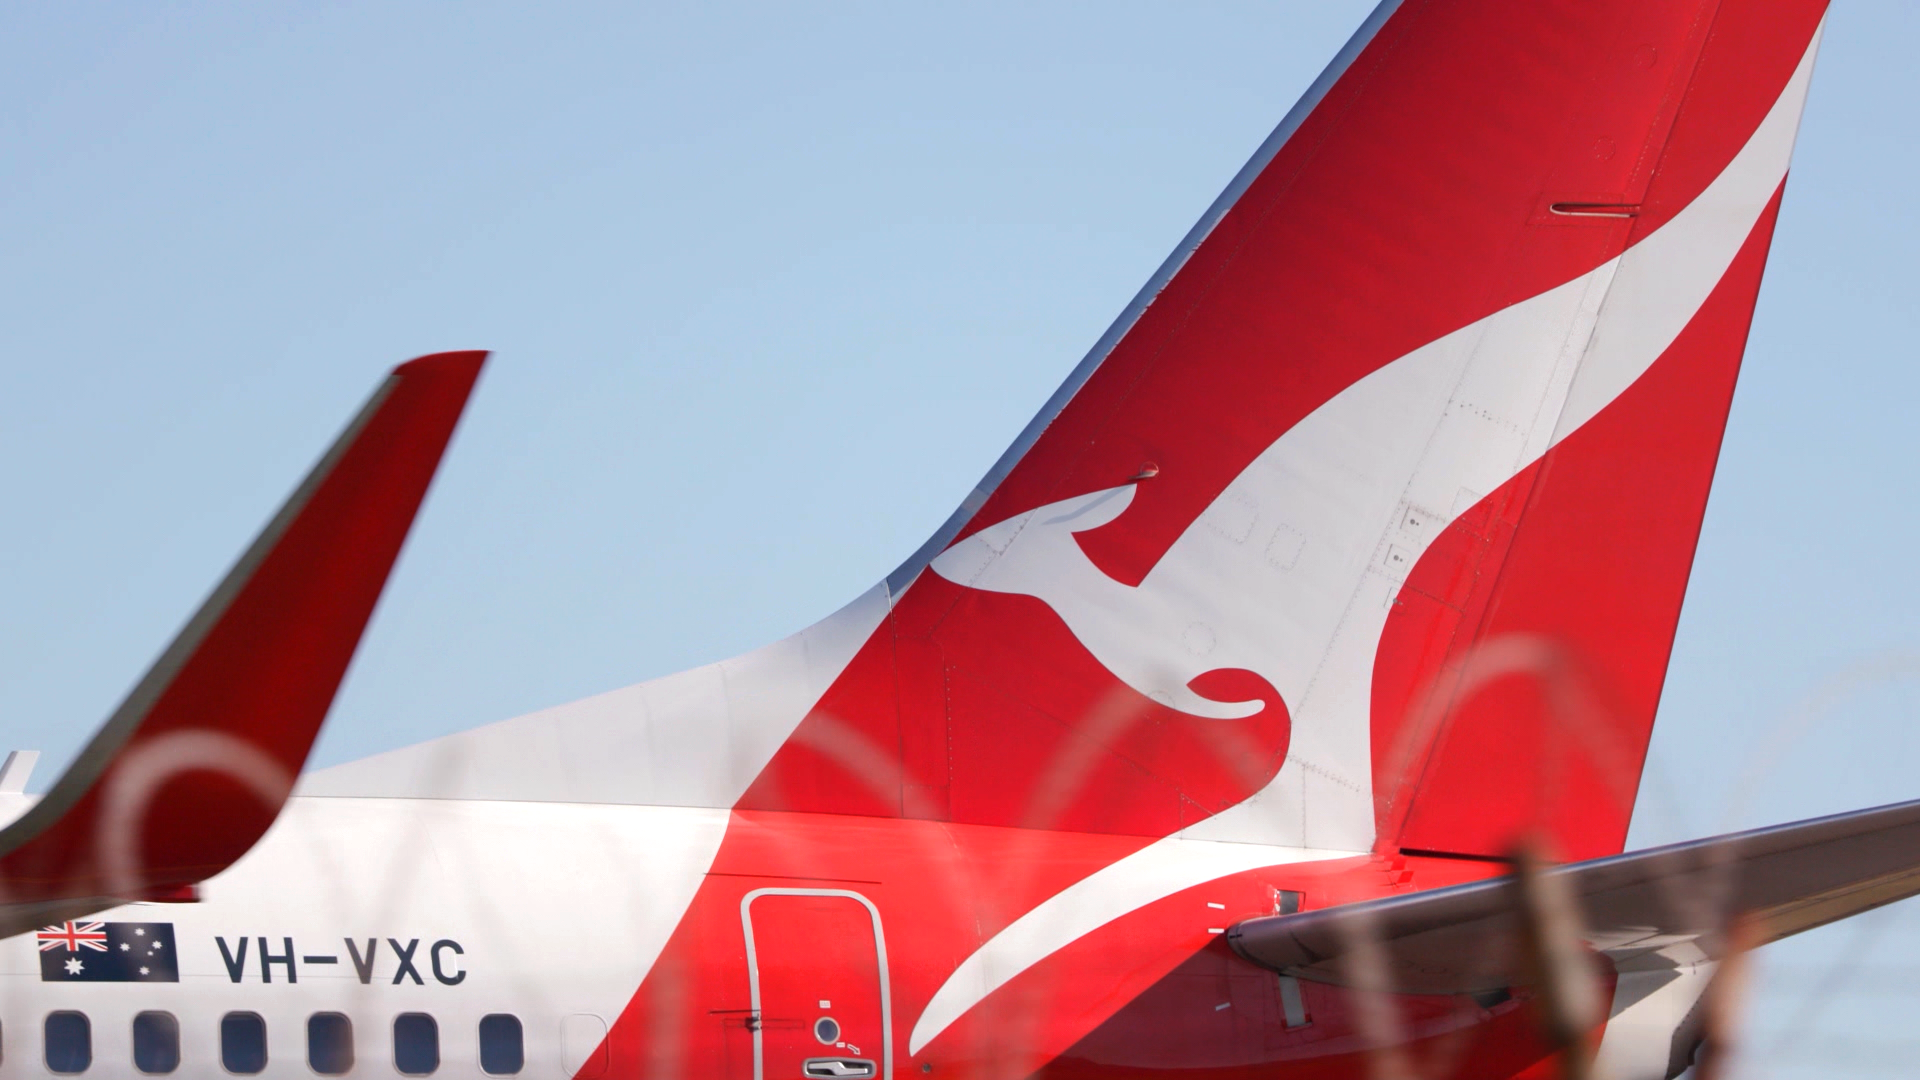 A close -其中一架飞机尾部的澳航标志。它后面的天空是晴朗的。” class=